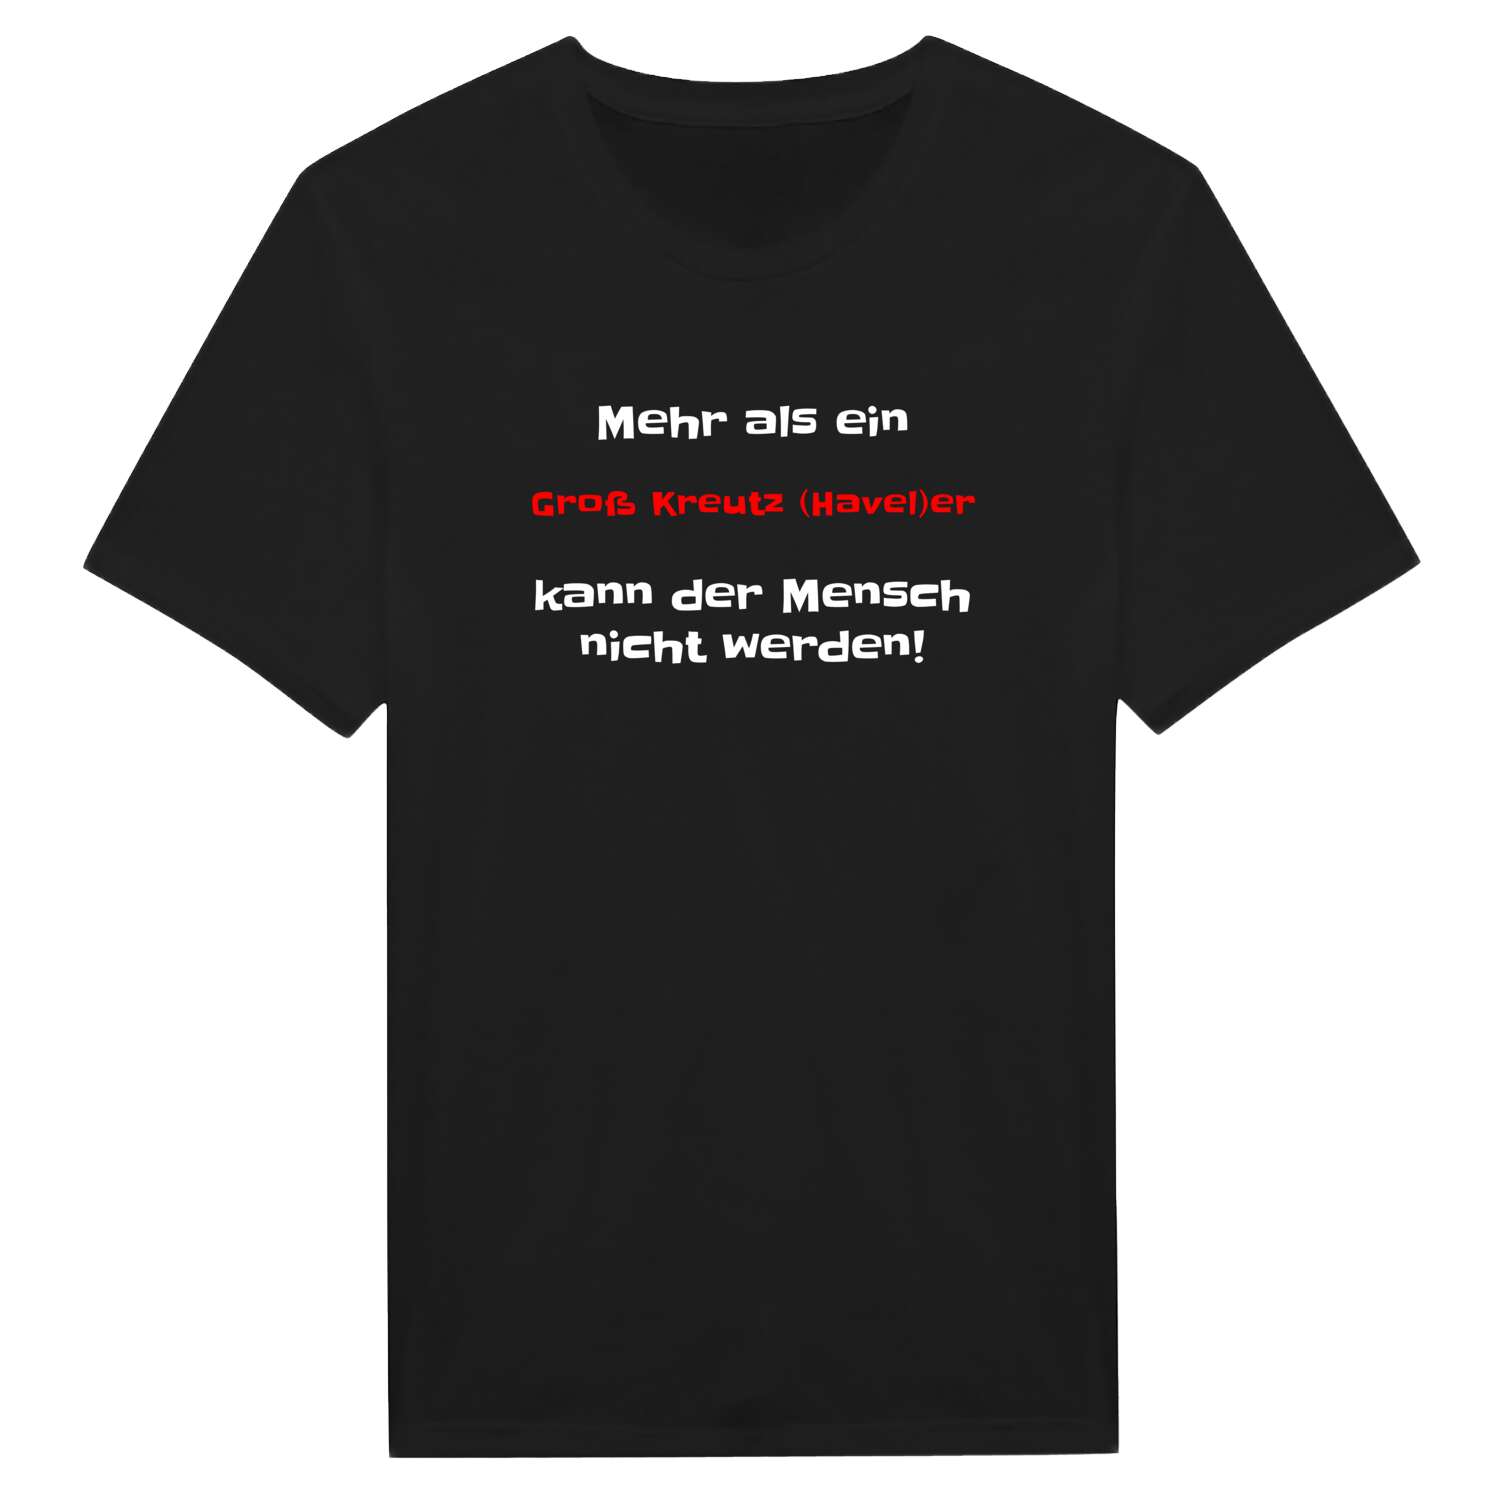 Groß Kreutz (Havel) T-Shirt »Mehr als ein«